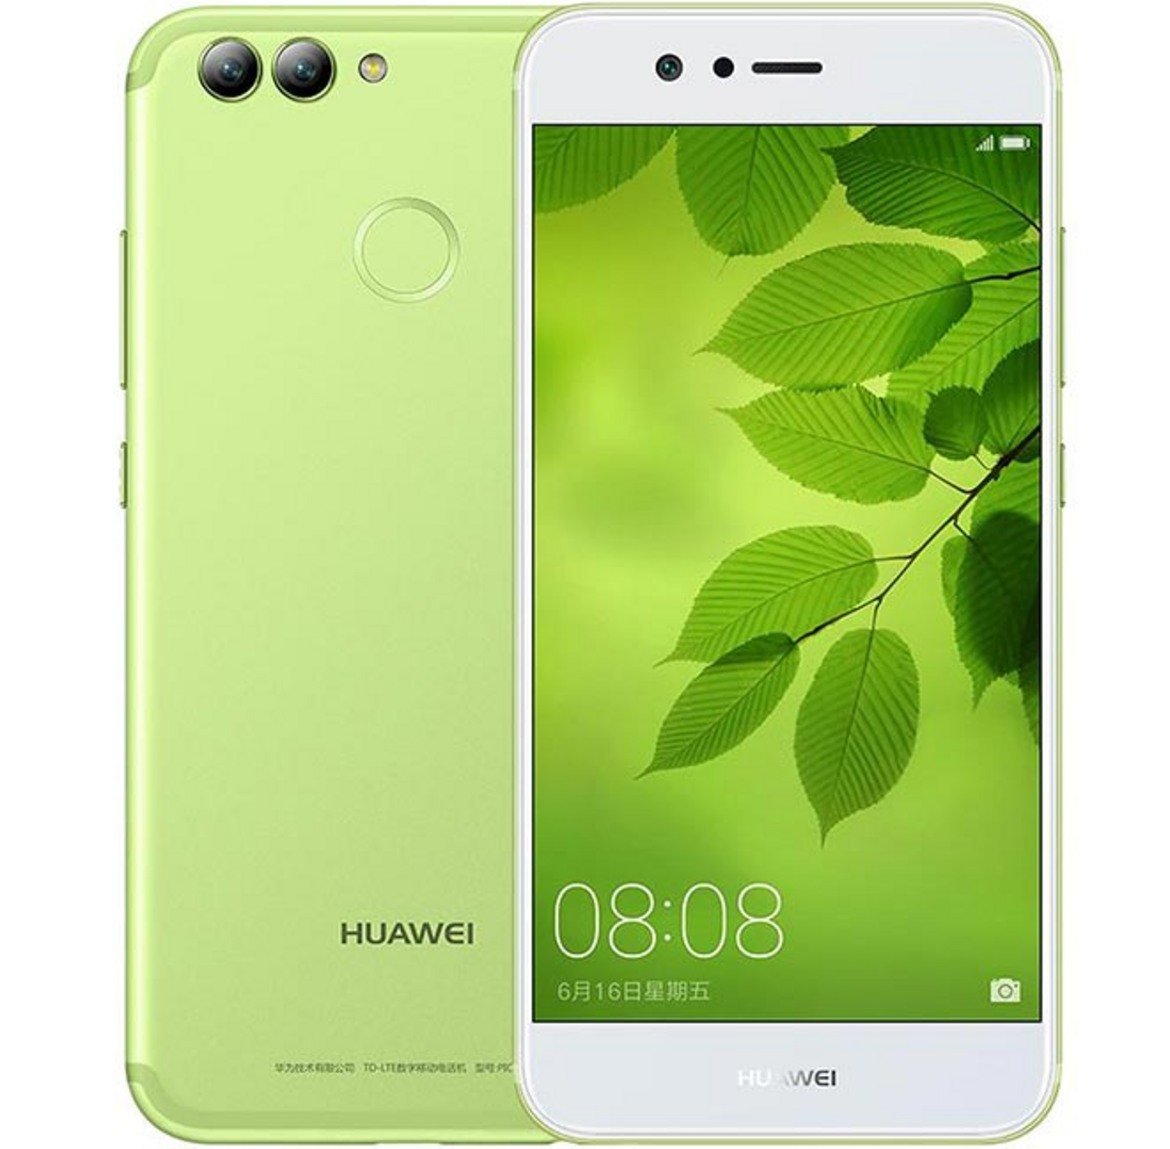 Новият Huawei Mate 10 няма да бъде единствената иновация от компанията. Те ще представят и новия Huawei Nova 2. Той би трябвало да има процесор Kirin 658 и вградена памет от 64 гигабайта. В допълнение ще има двойна камера от 12 мегапиксела и предна камера - 5 мегапиксела. Huawei Nova 2 ще бъде на пазара още този месец с цена от около 400 долара.

